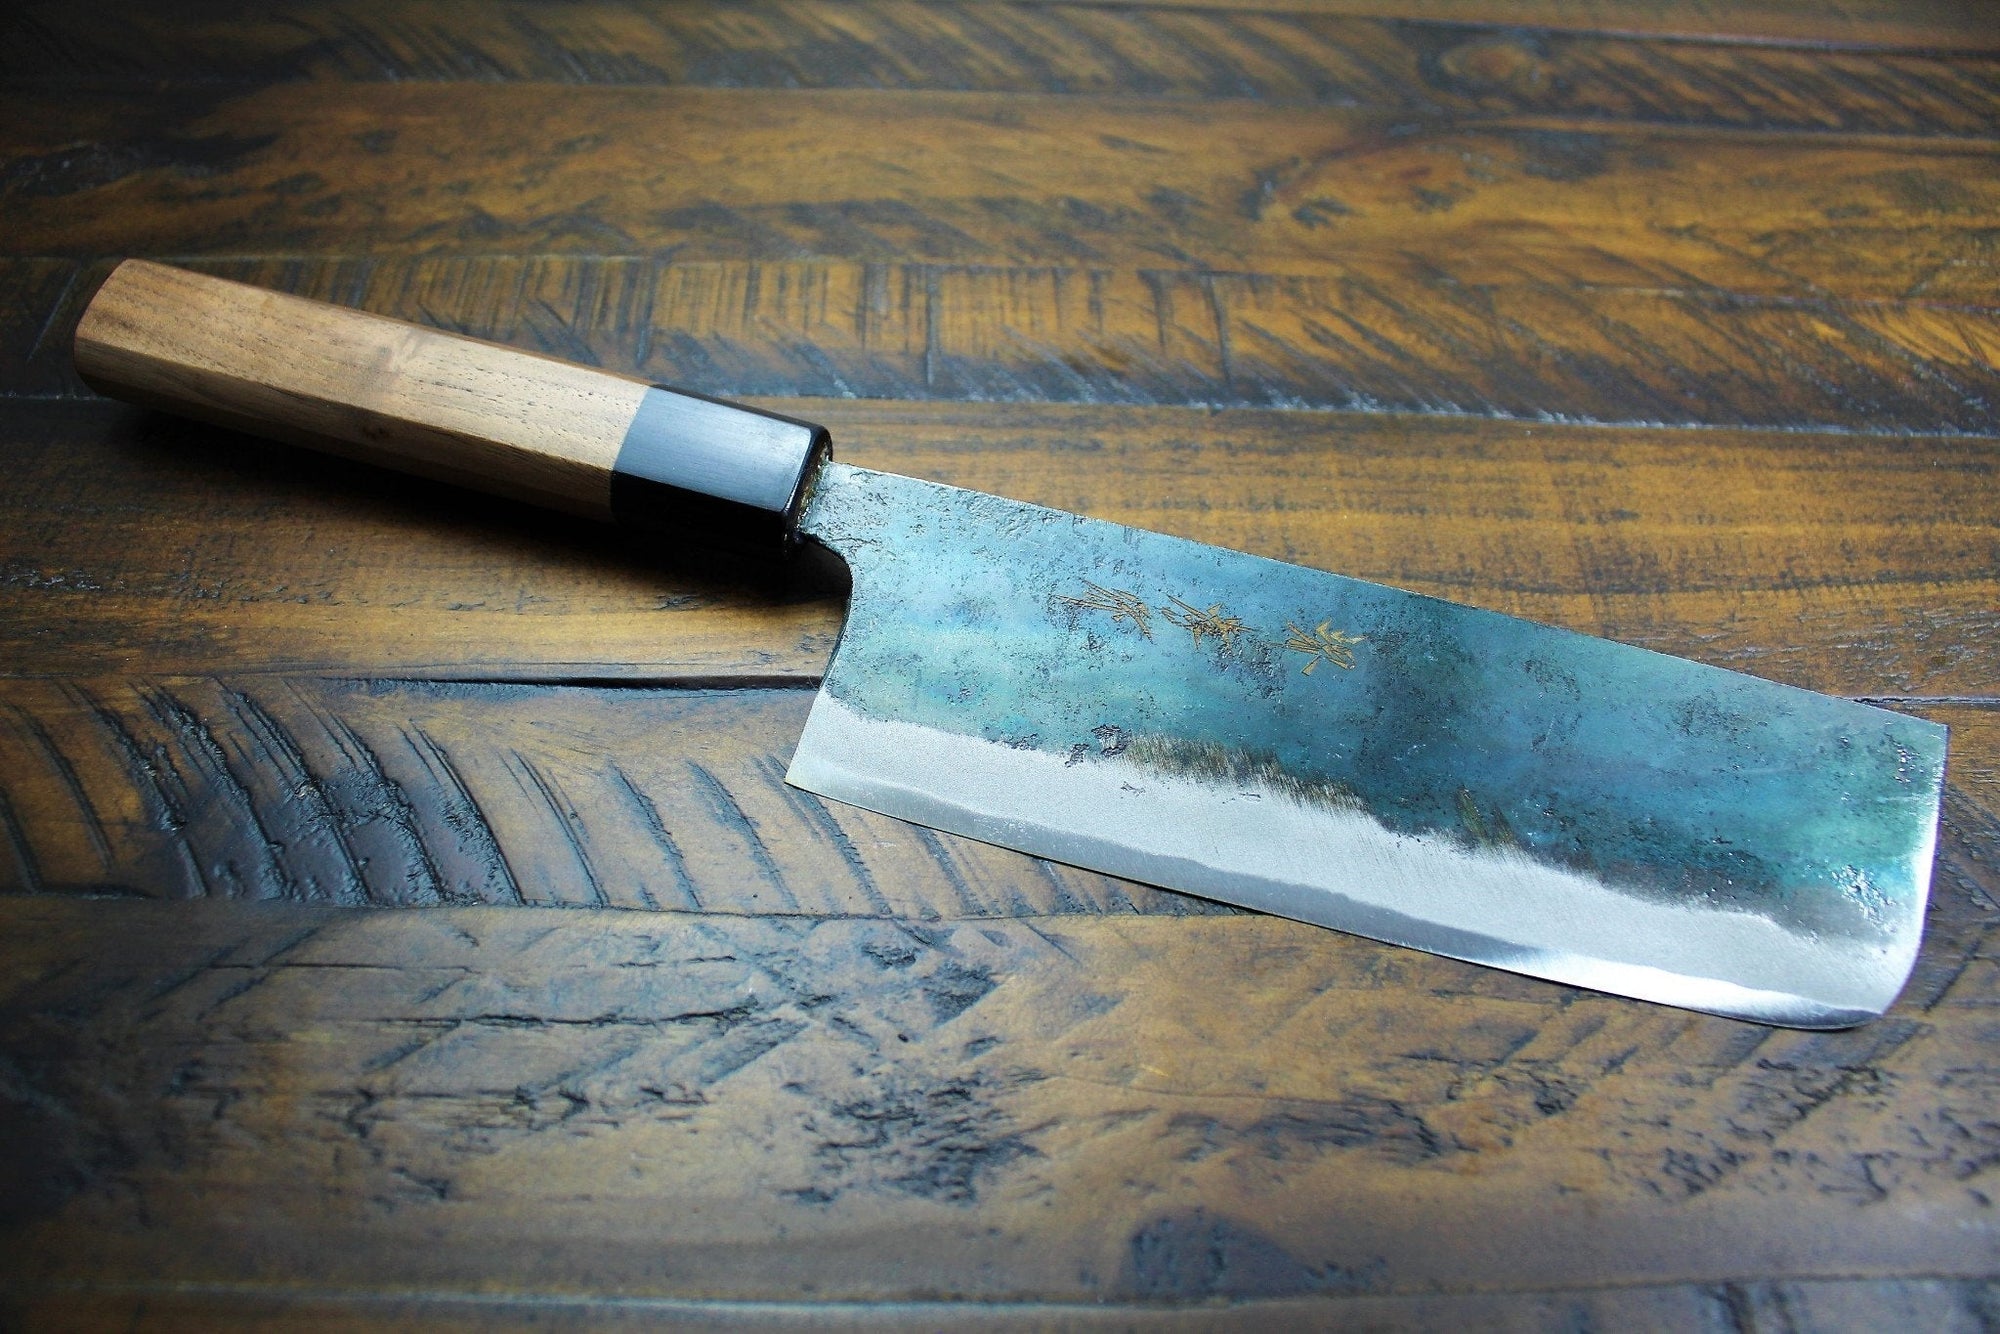 Kitchen Knives - Sakai Takayuki Nakiri Knife 170mm (6.7") Kurouchi Aoniko  / Blue Steel #2